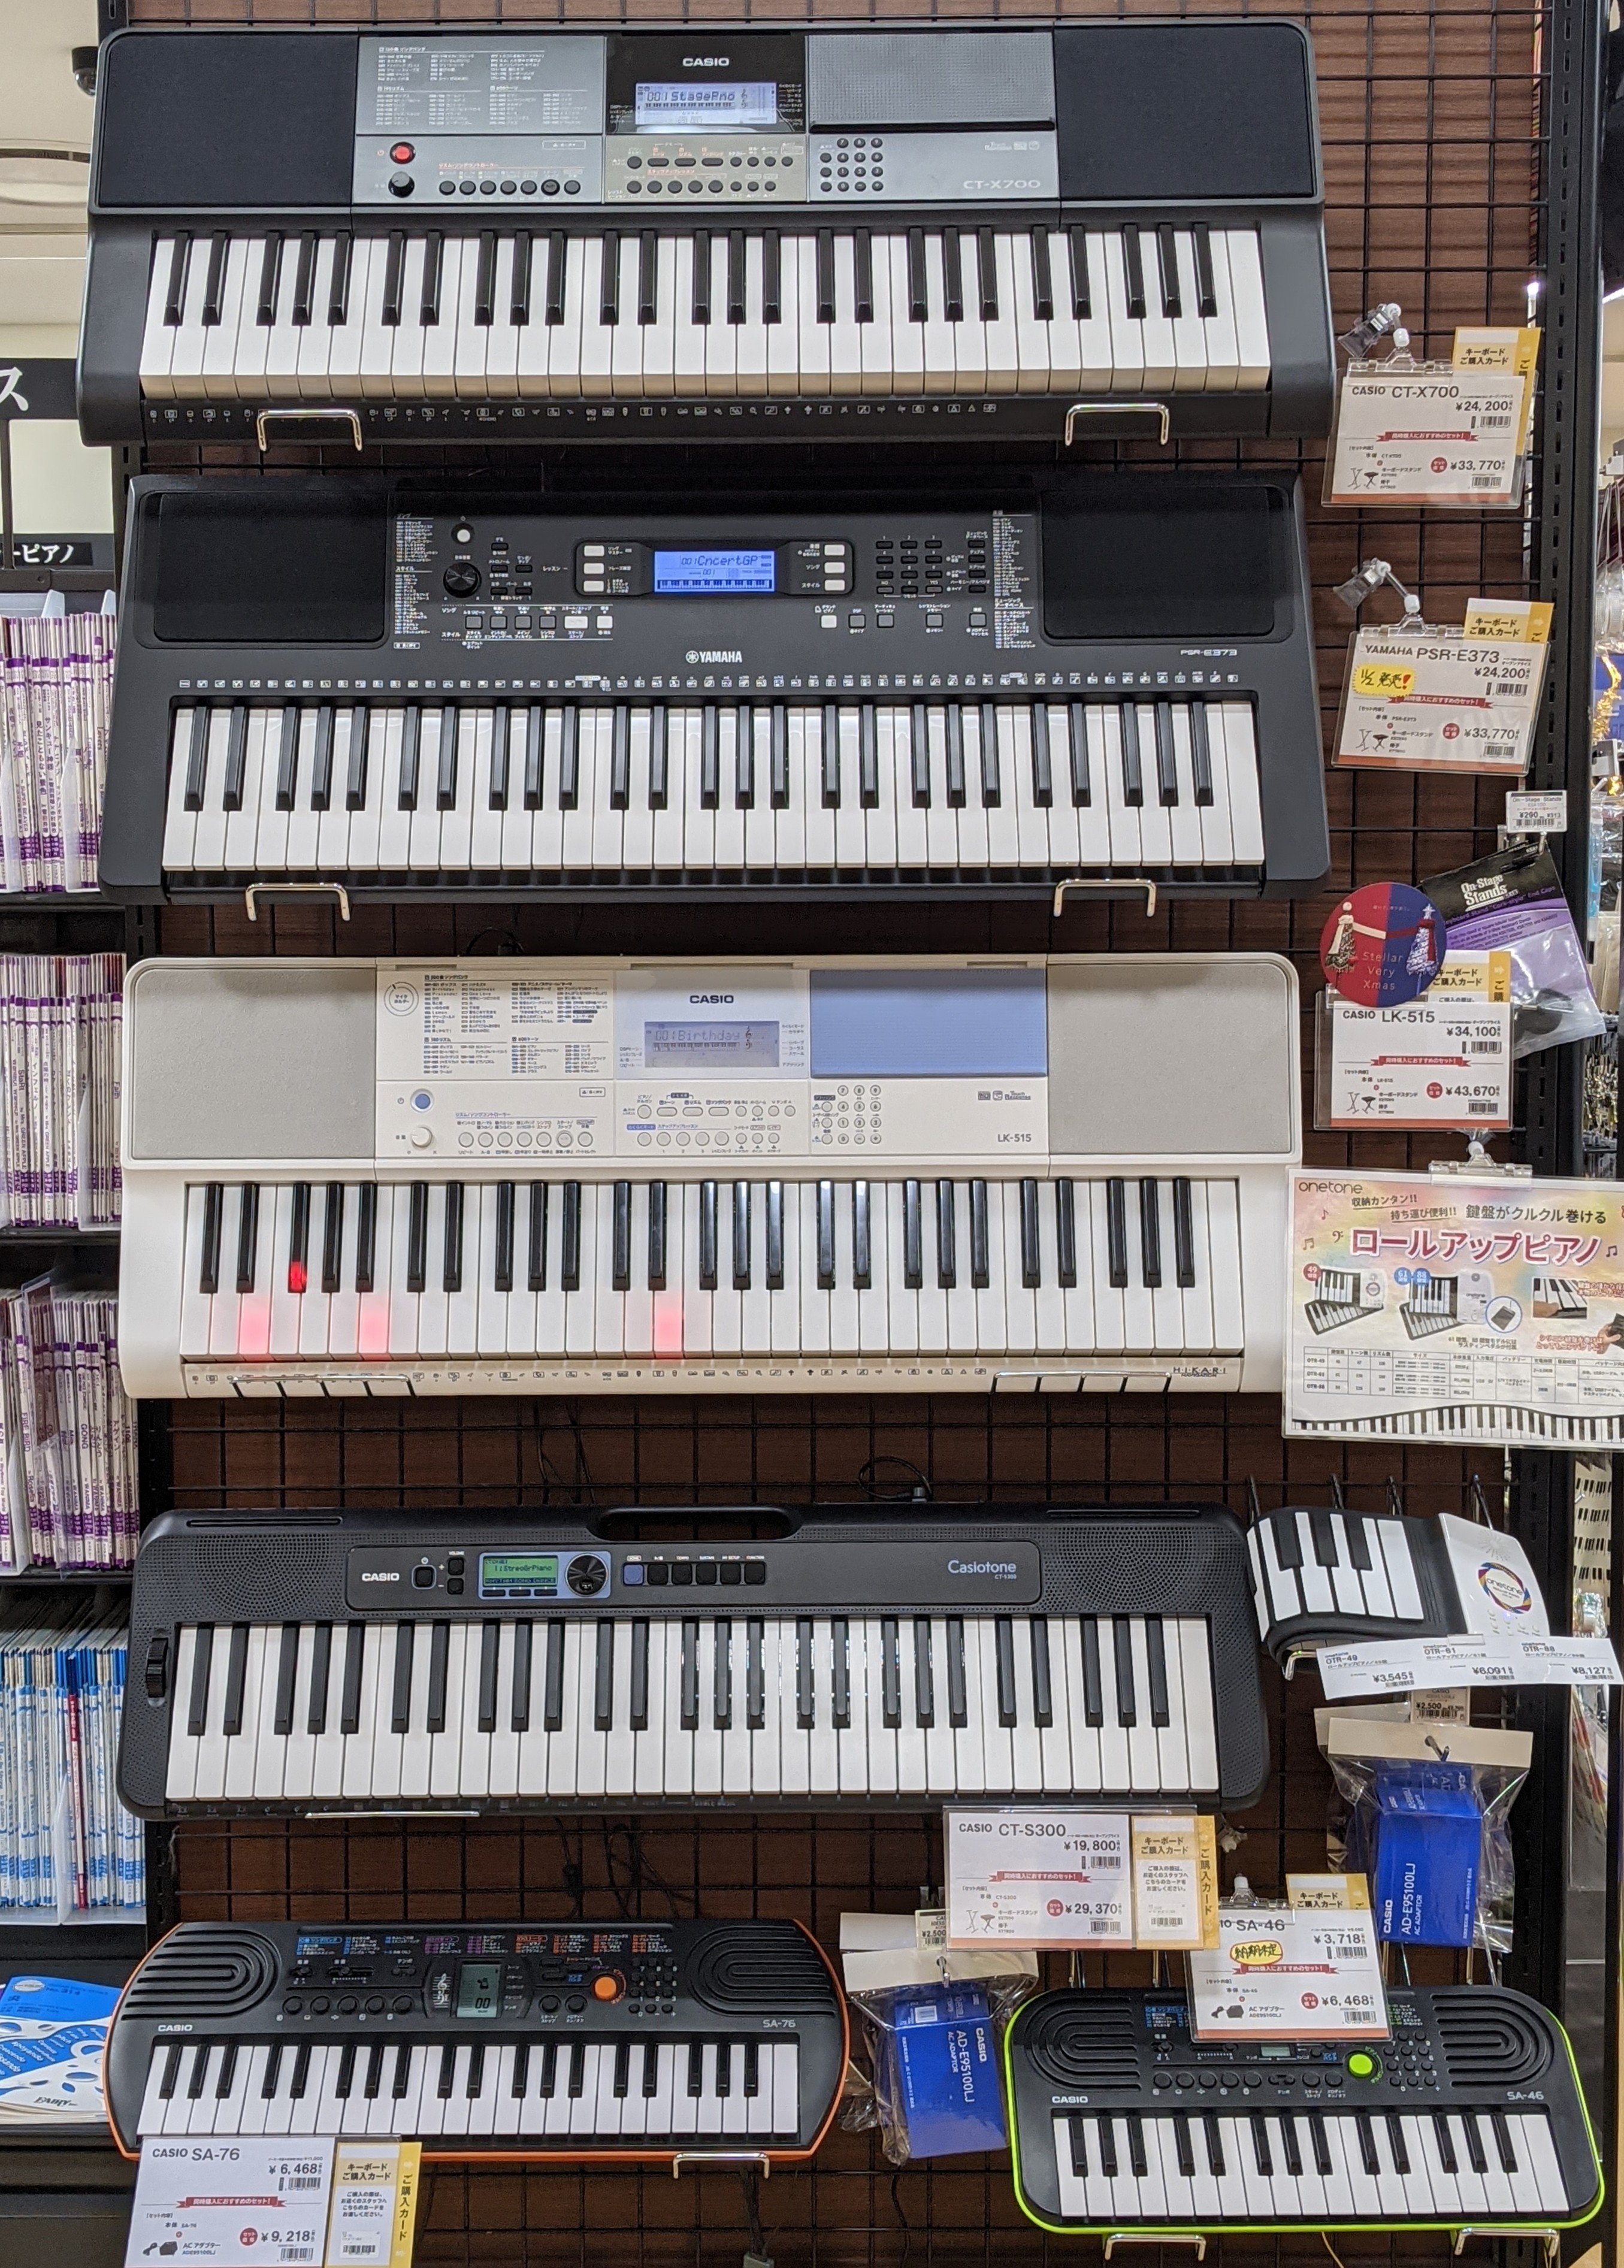 *札幌ステラプレイス店のキーボード紹介！ こんにちは！キーボード担当の清水です。 今回は老若男女すべての人にオススメできるキーボードの紹介をしていきます。 まずは、キーボードと電子ピアノの違いを見ていきましょう！ |*キーボード|電子ピアノ| |*[!鍵盤楽器を手軽に便利に楽しむ!]ために作られてい […]